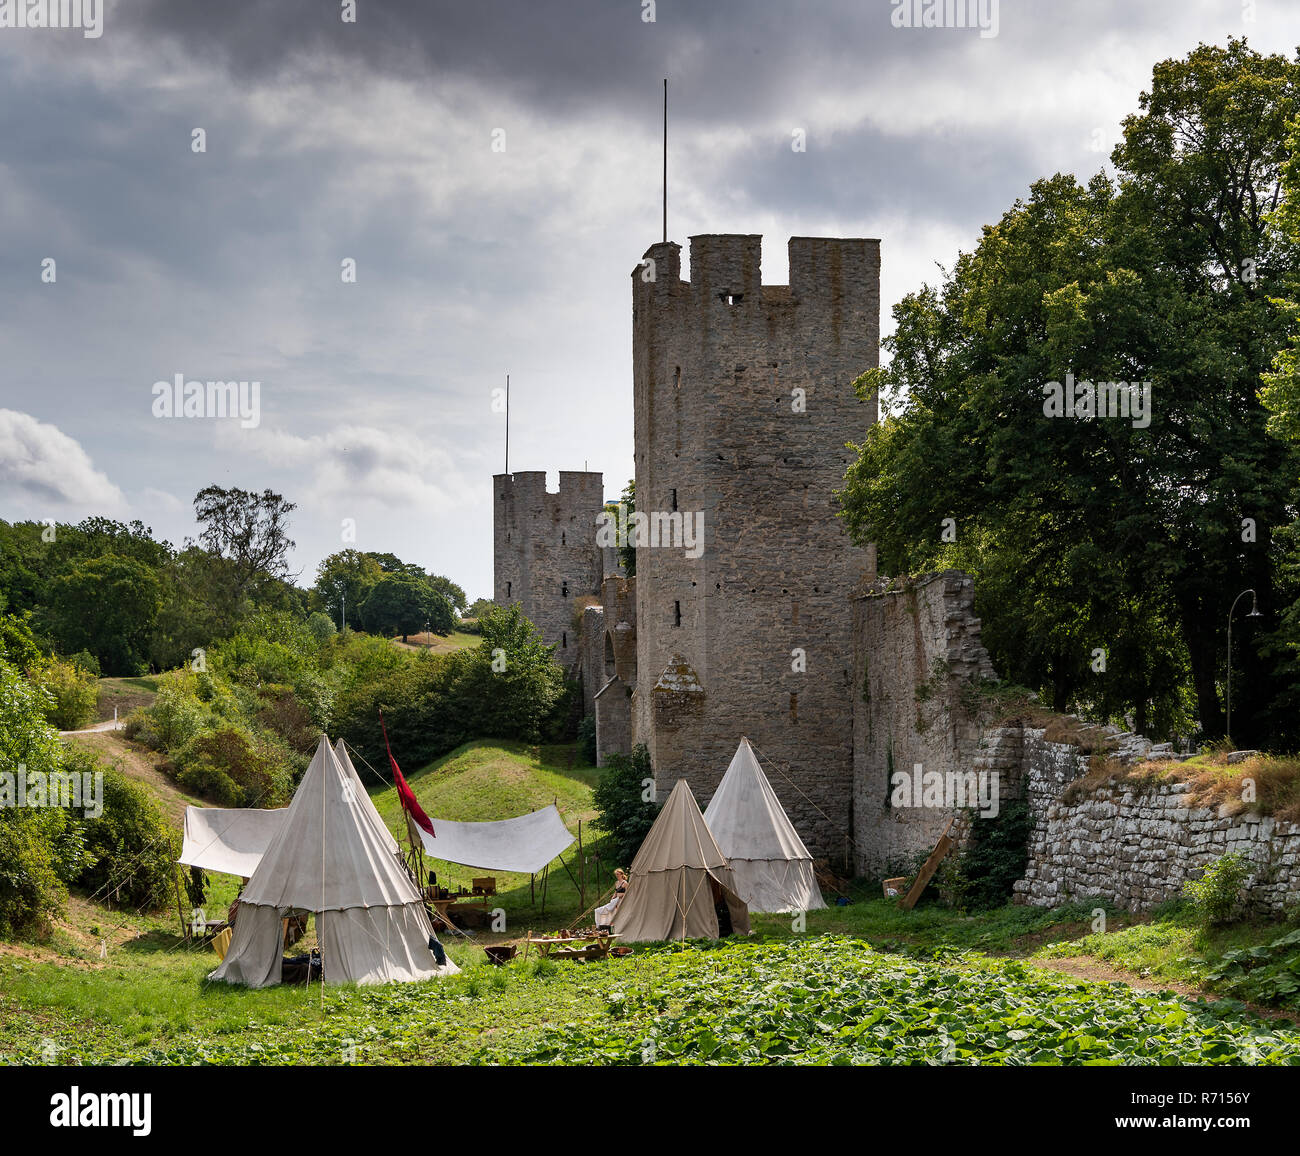 Camp de toile, semaine médiévale, ville médiévale avec des tours de défense, Site du patrimoine mondial de l'UNESCO, l'île de Gotland, Visby, Suède Banque D'Images